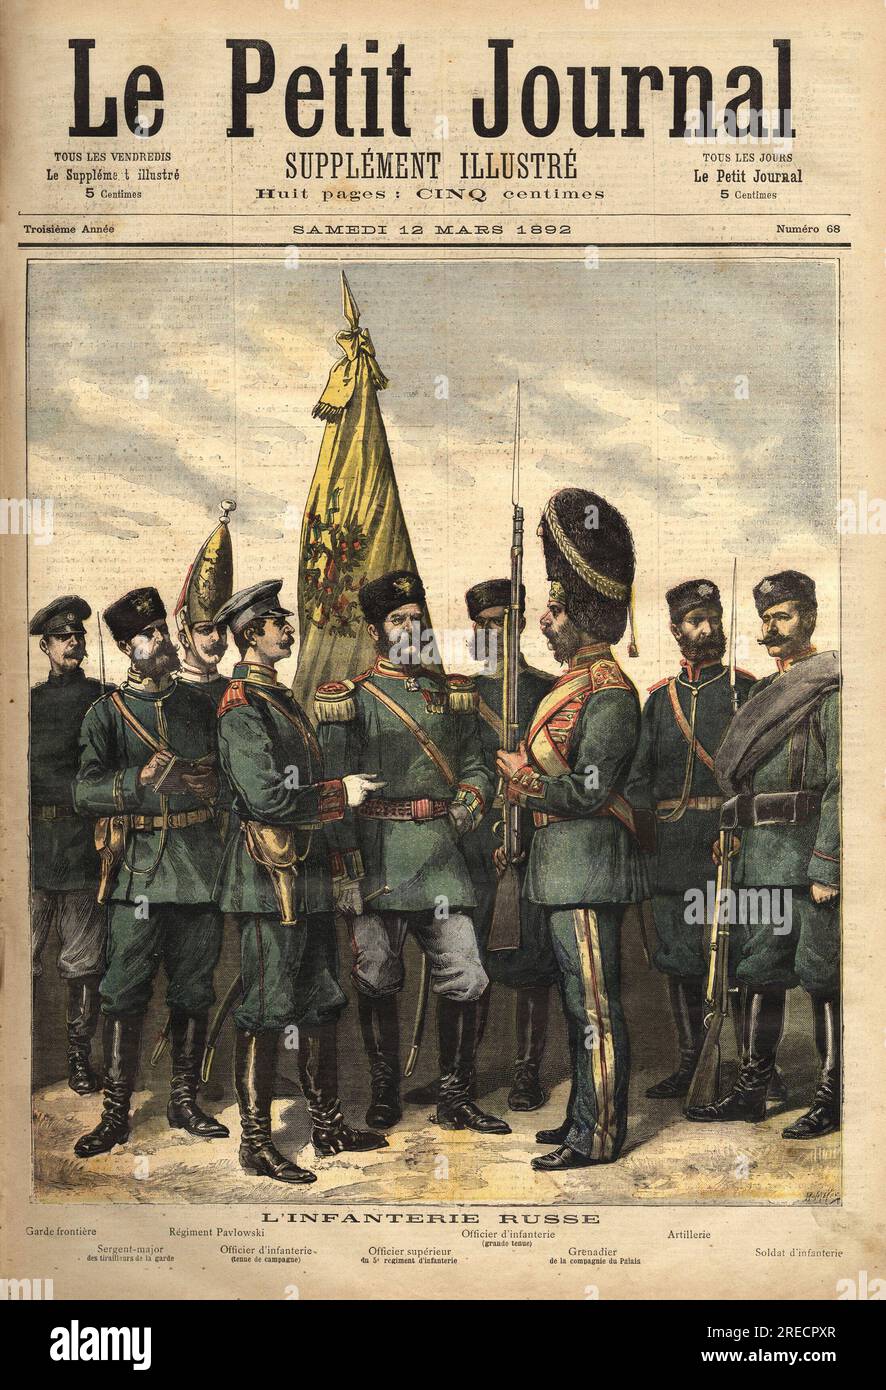 Les uniformes de l'infanterie russe, alliee de la France,  de gauche a droite: le garde frontiere, le sergent major des tirailleurs de la garde, le regiment pavlowski, l'officier, l'officier superieur, le grenadier du palais , l'uniforme d'artillerie, et le soldat.  Gravure in 'Le petit journal' 12031892. Stock Photo